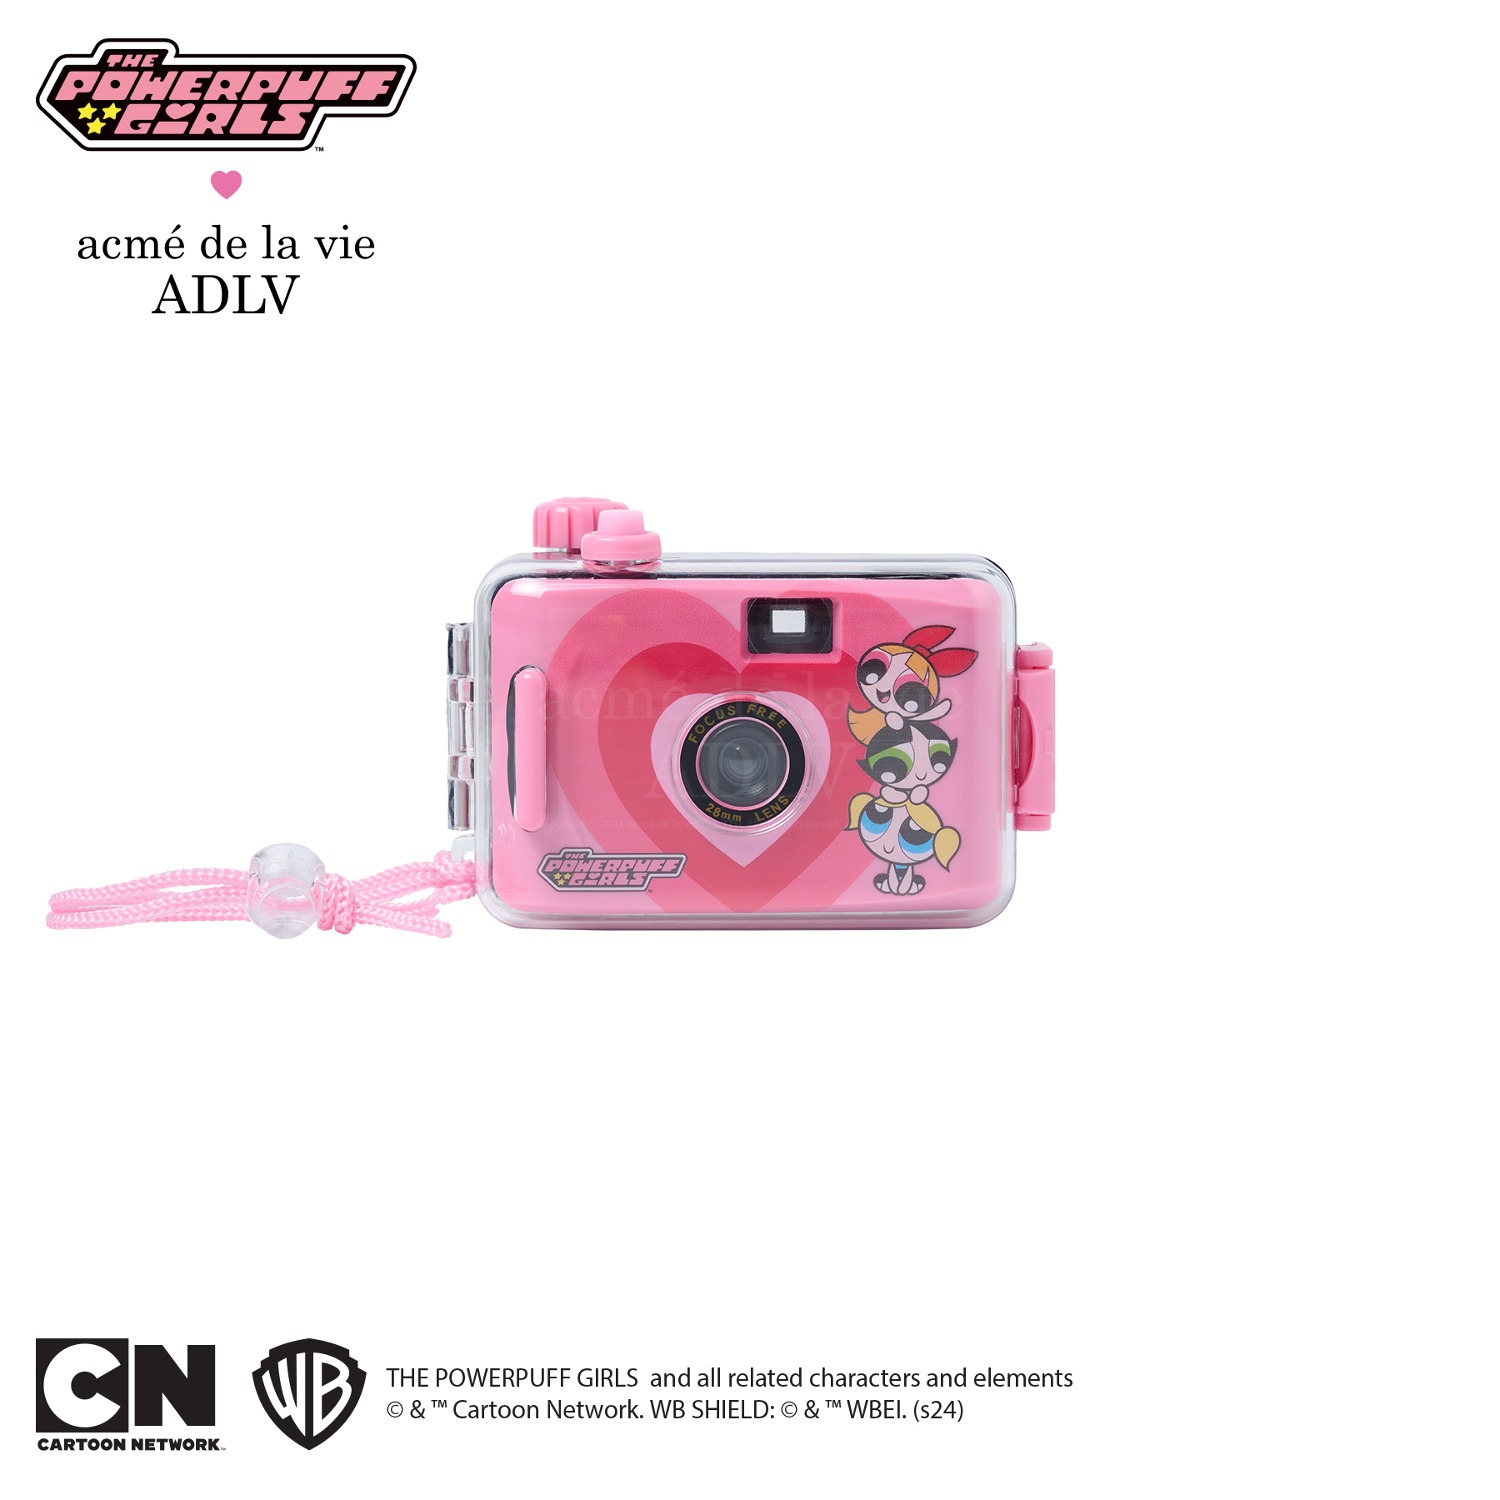 The Powerpuff Girls x acmedelavie waterproof film camera PINK